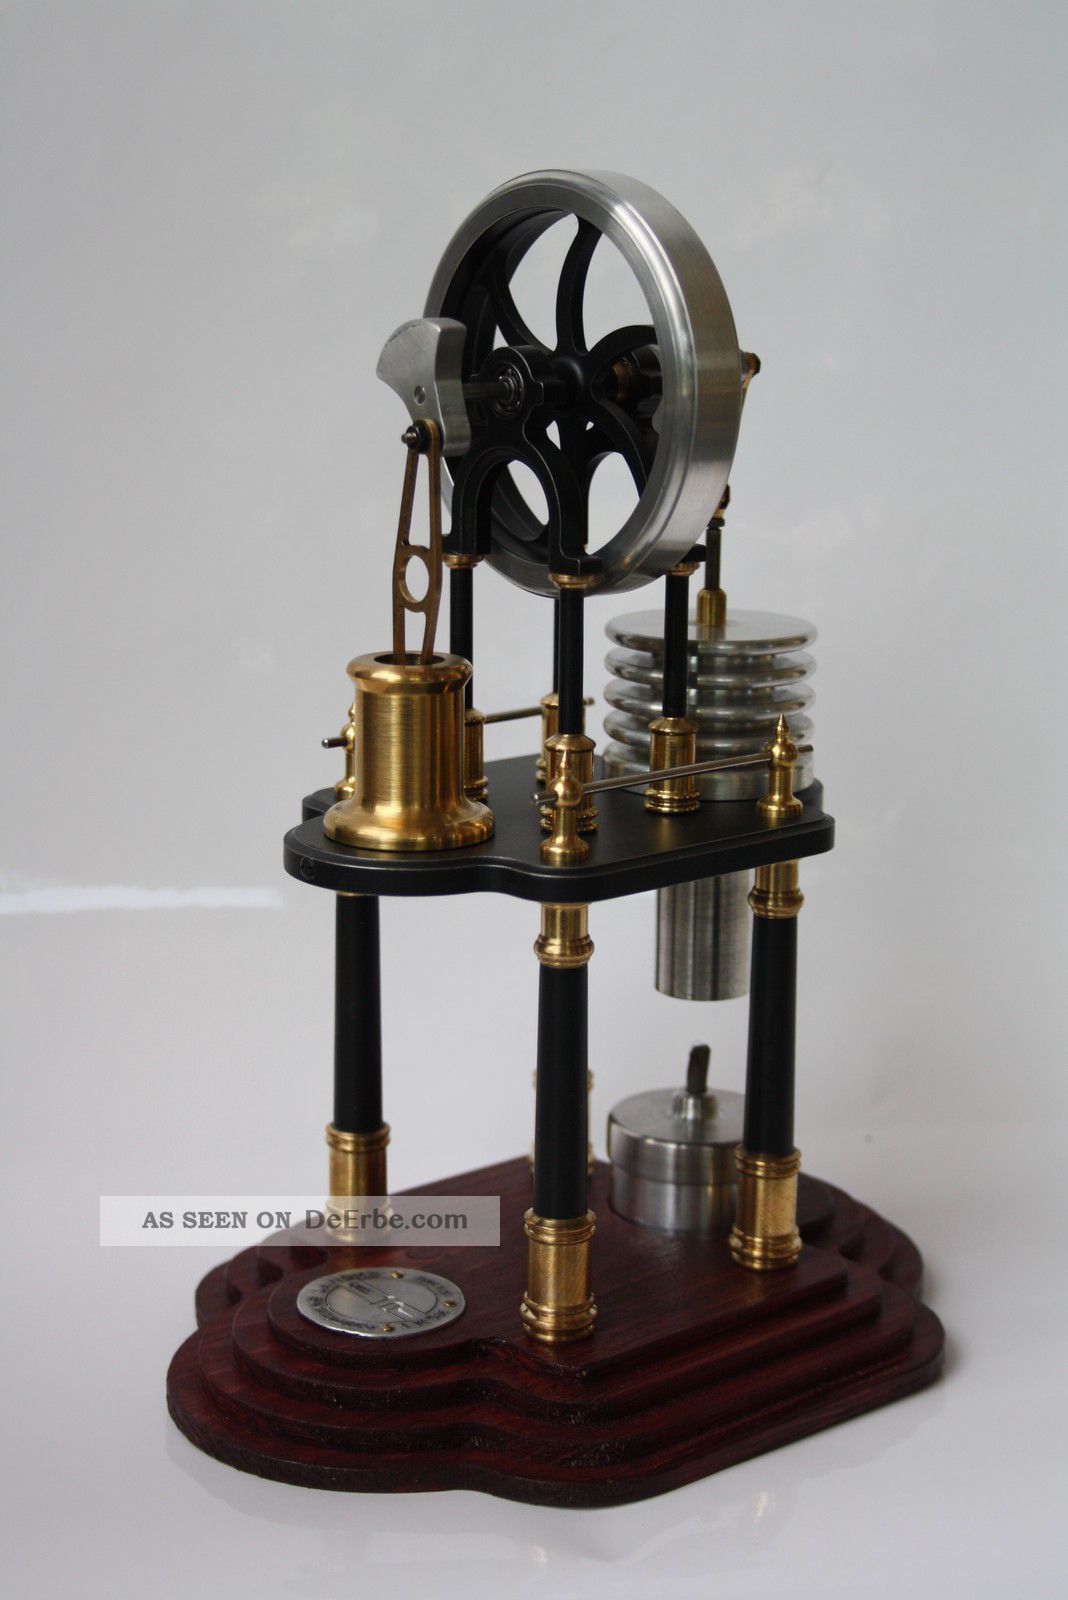 Heißluftmotor Ur Stirling Motor Hot Air Engine Schmuckstück Keine Dampfmaschine Gefertigt nach 1945 Bild